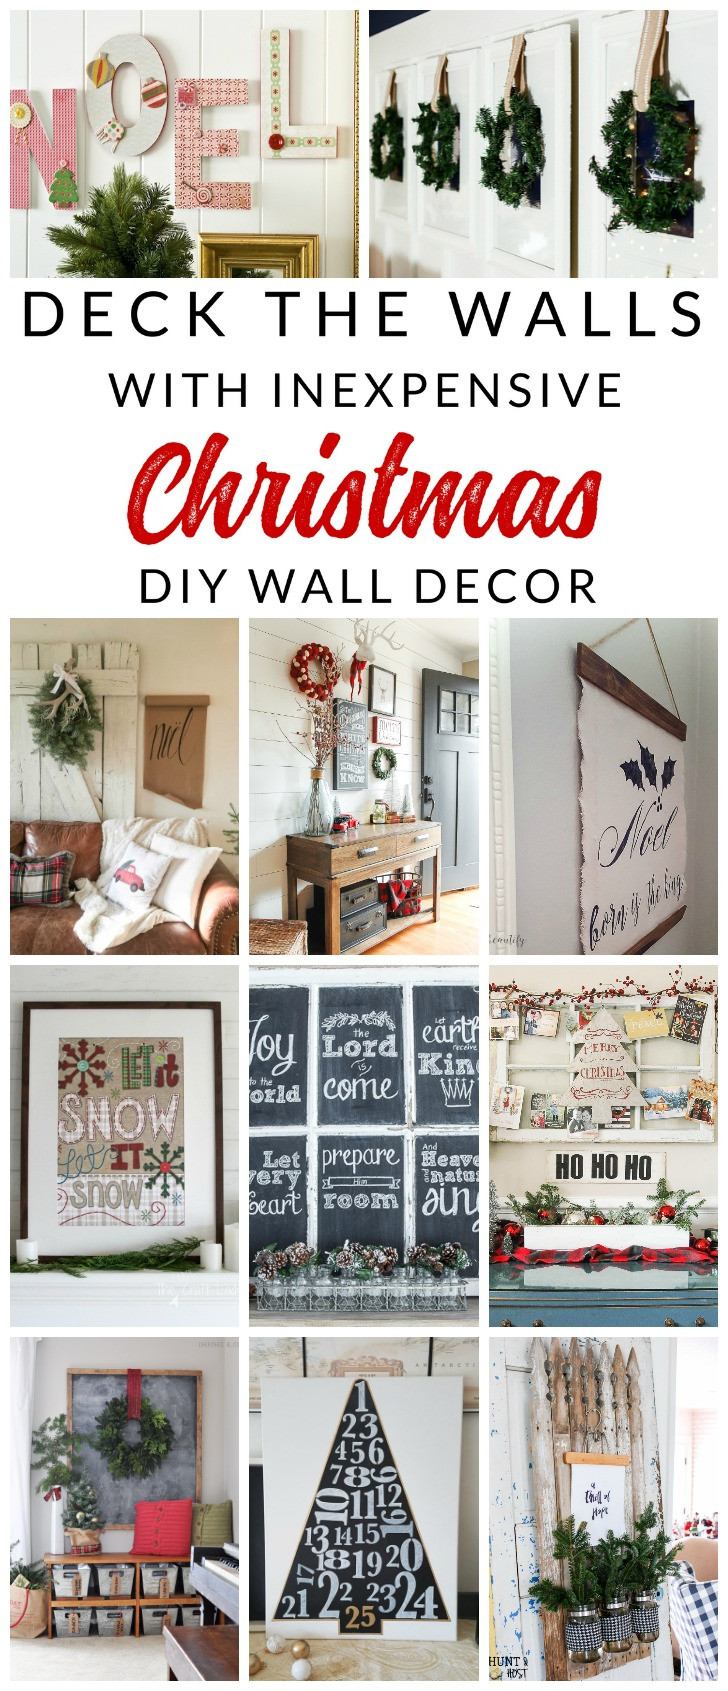 DIY Christmas Wall Decor
 Deck the Walls 14 Inspiring DIY Christmas Wall Decor